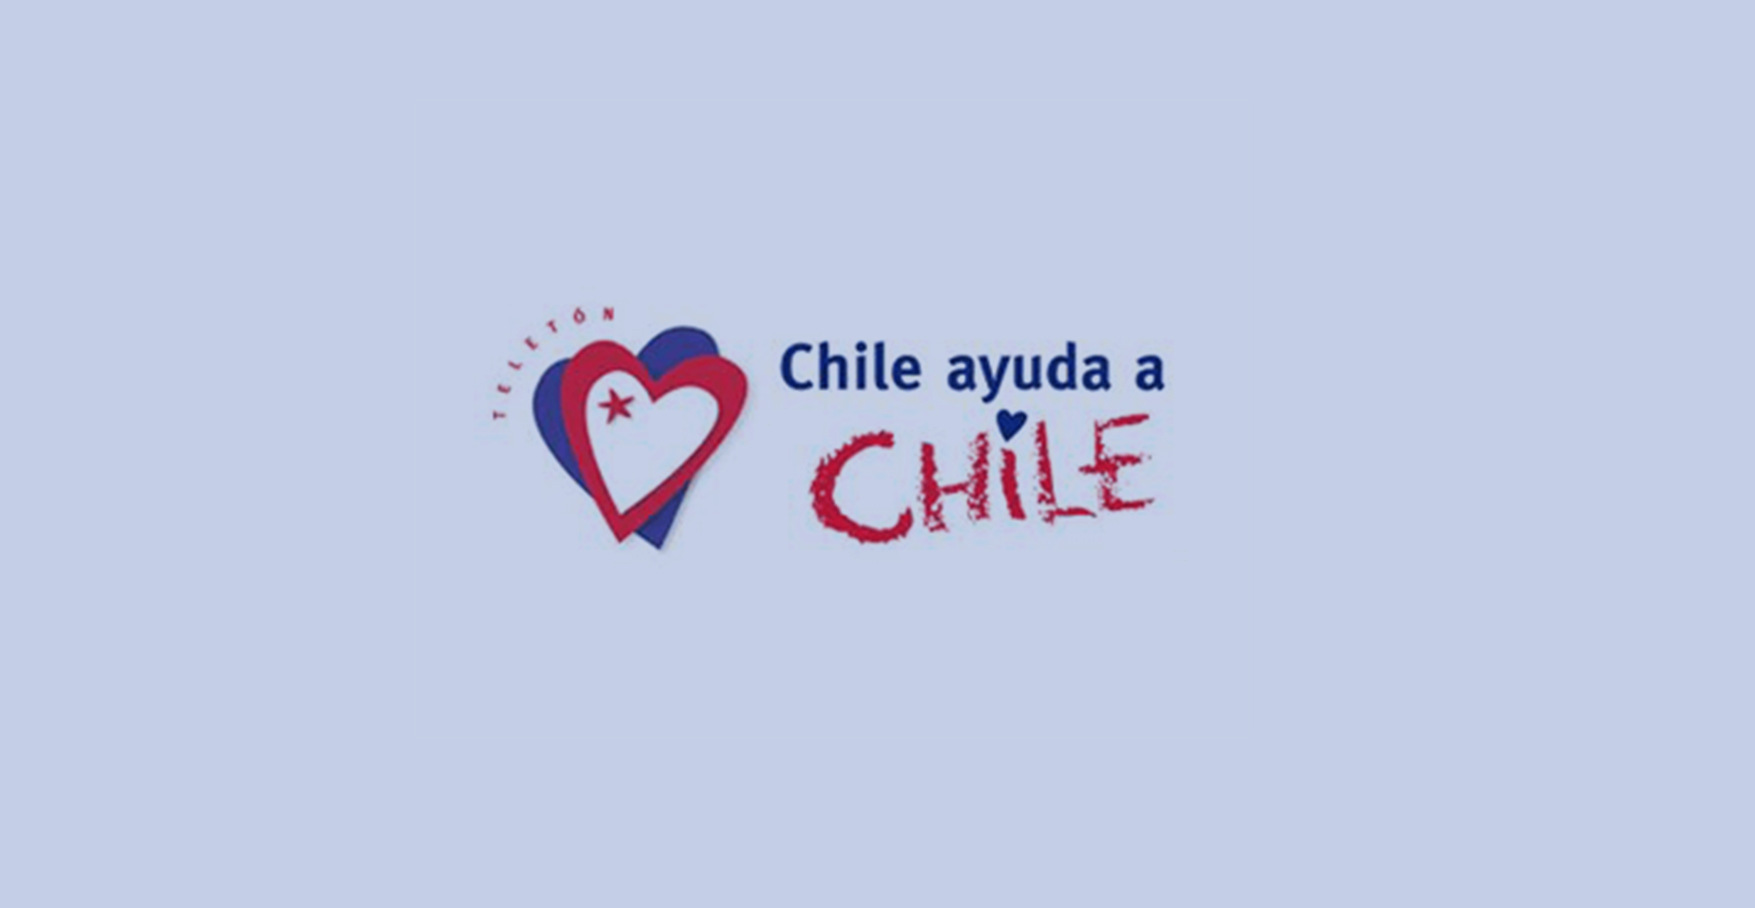 Chile ayuda a Chile